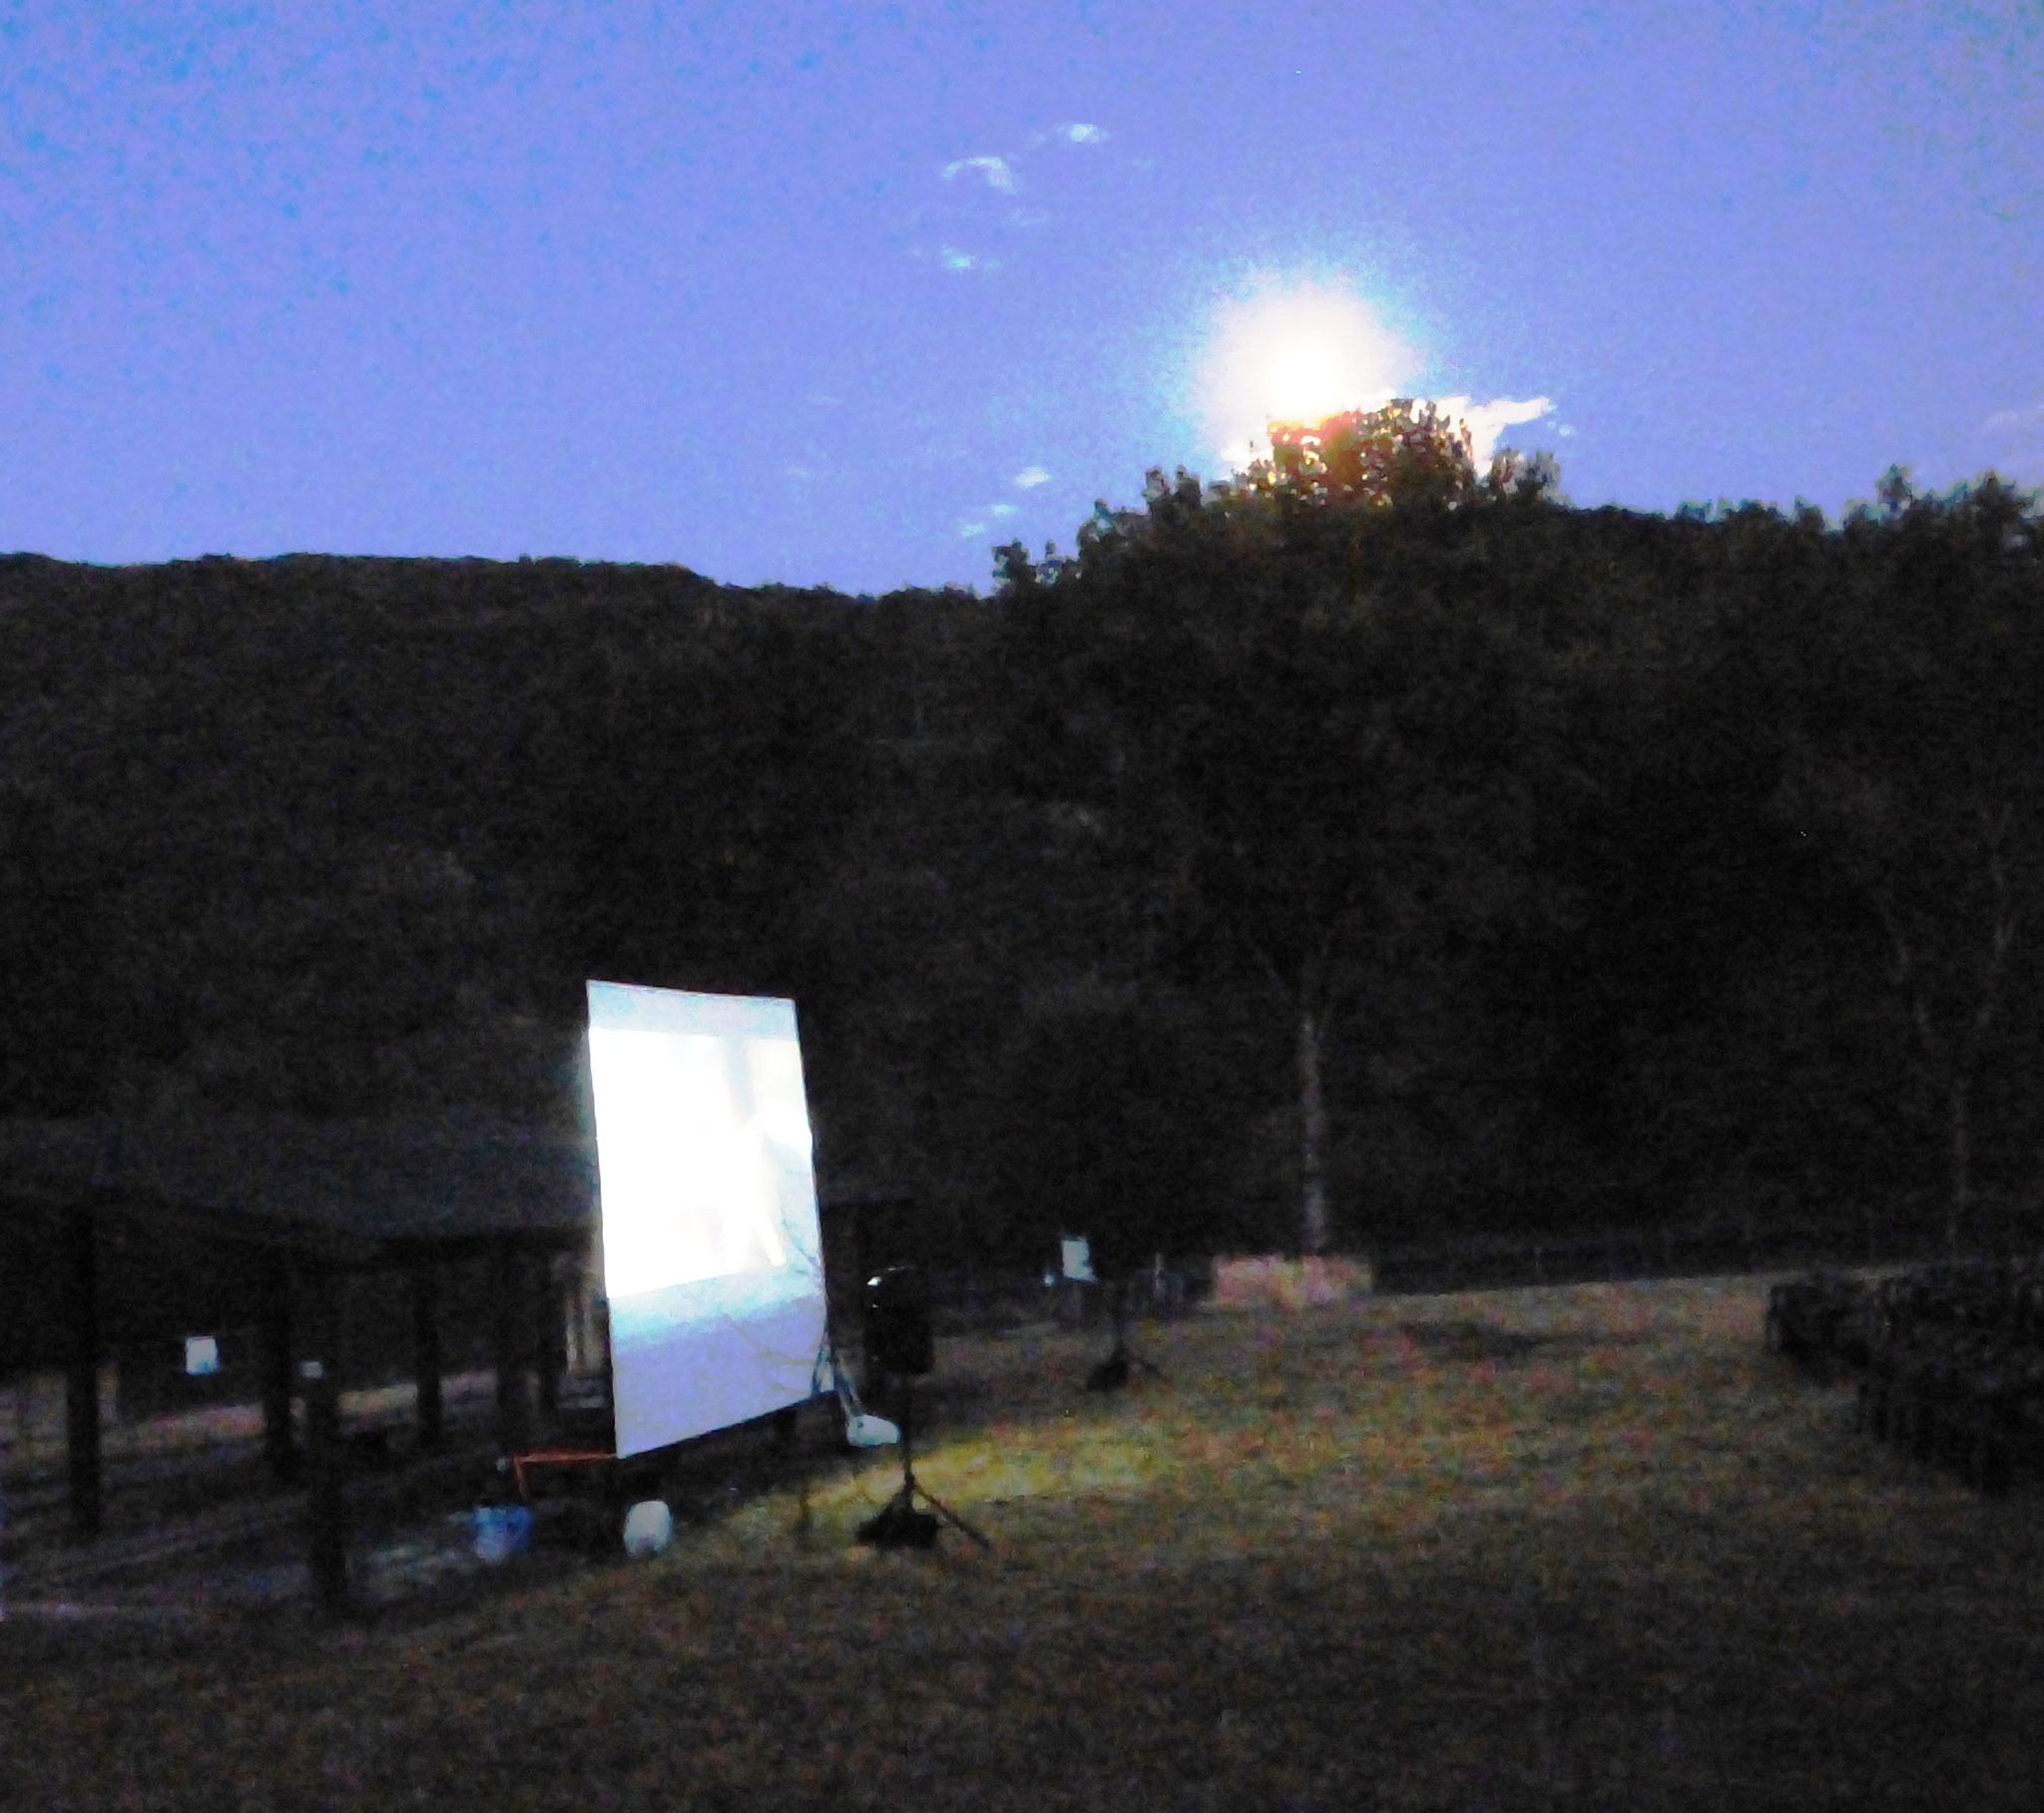 cinema sotto le stelle - Parco Archeologico di Travo 16 agosto 2016